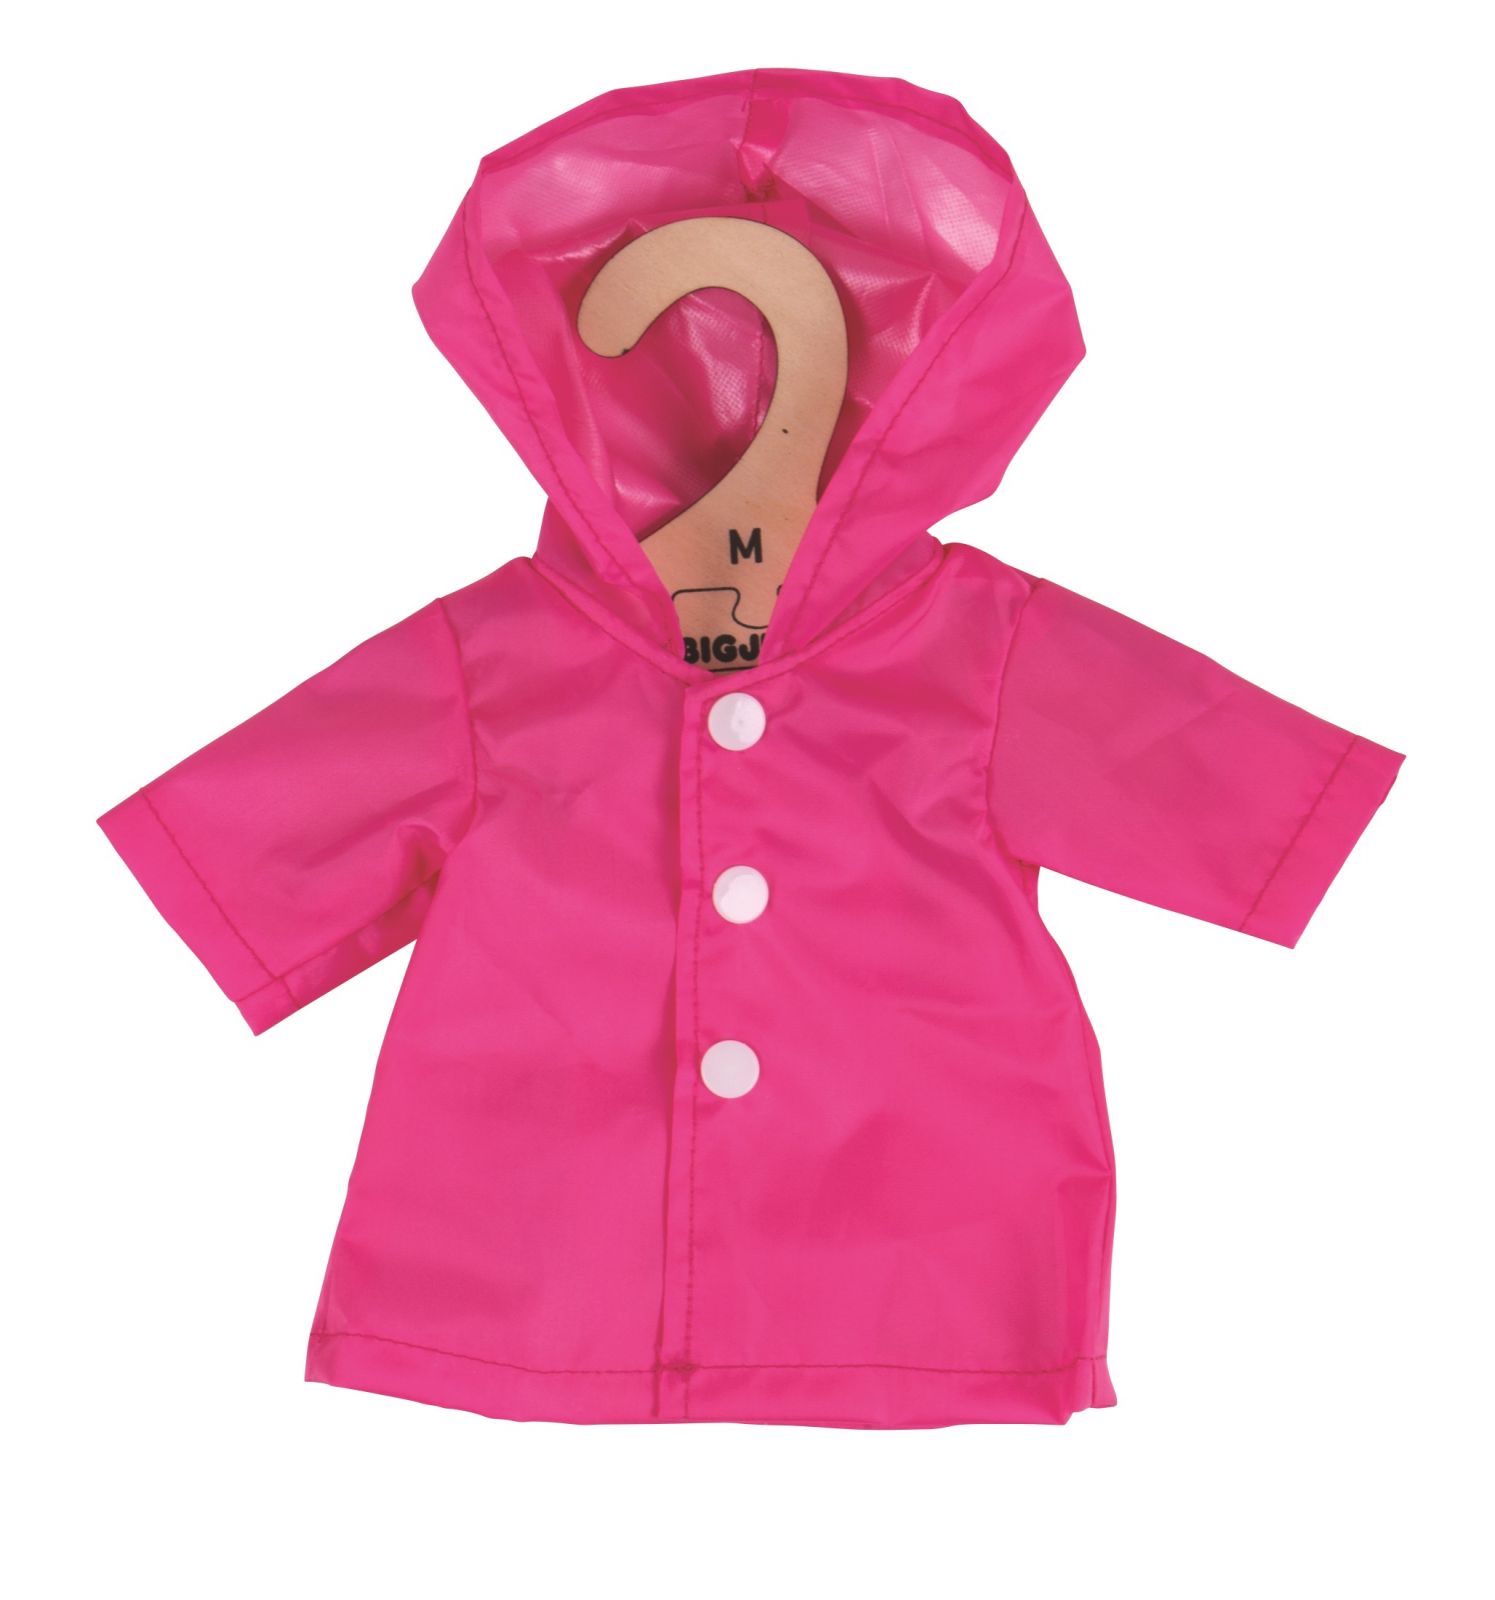 Dřevěné hračky Bigjigs Toys Růžový kabátek pro panenku 34 cm